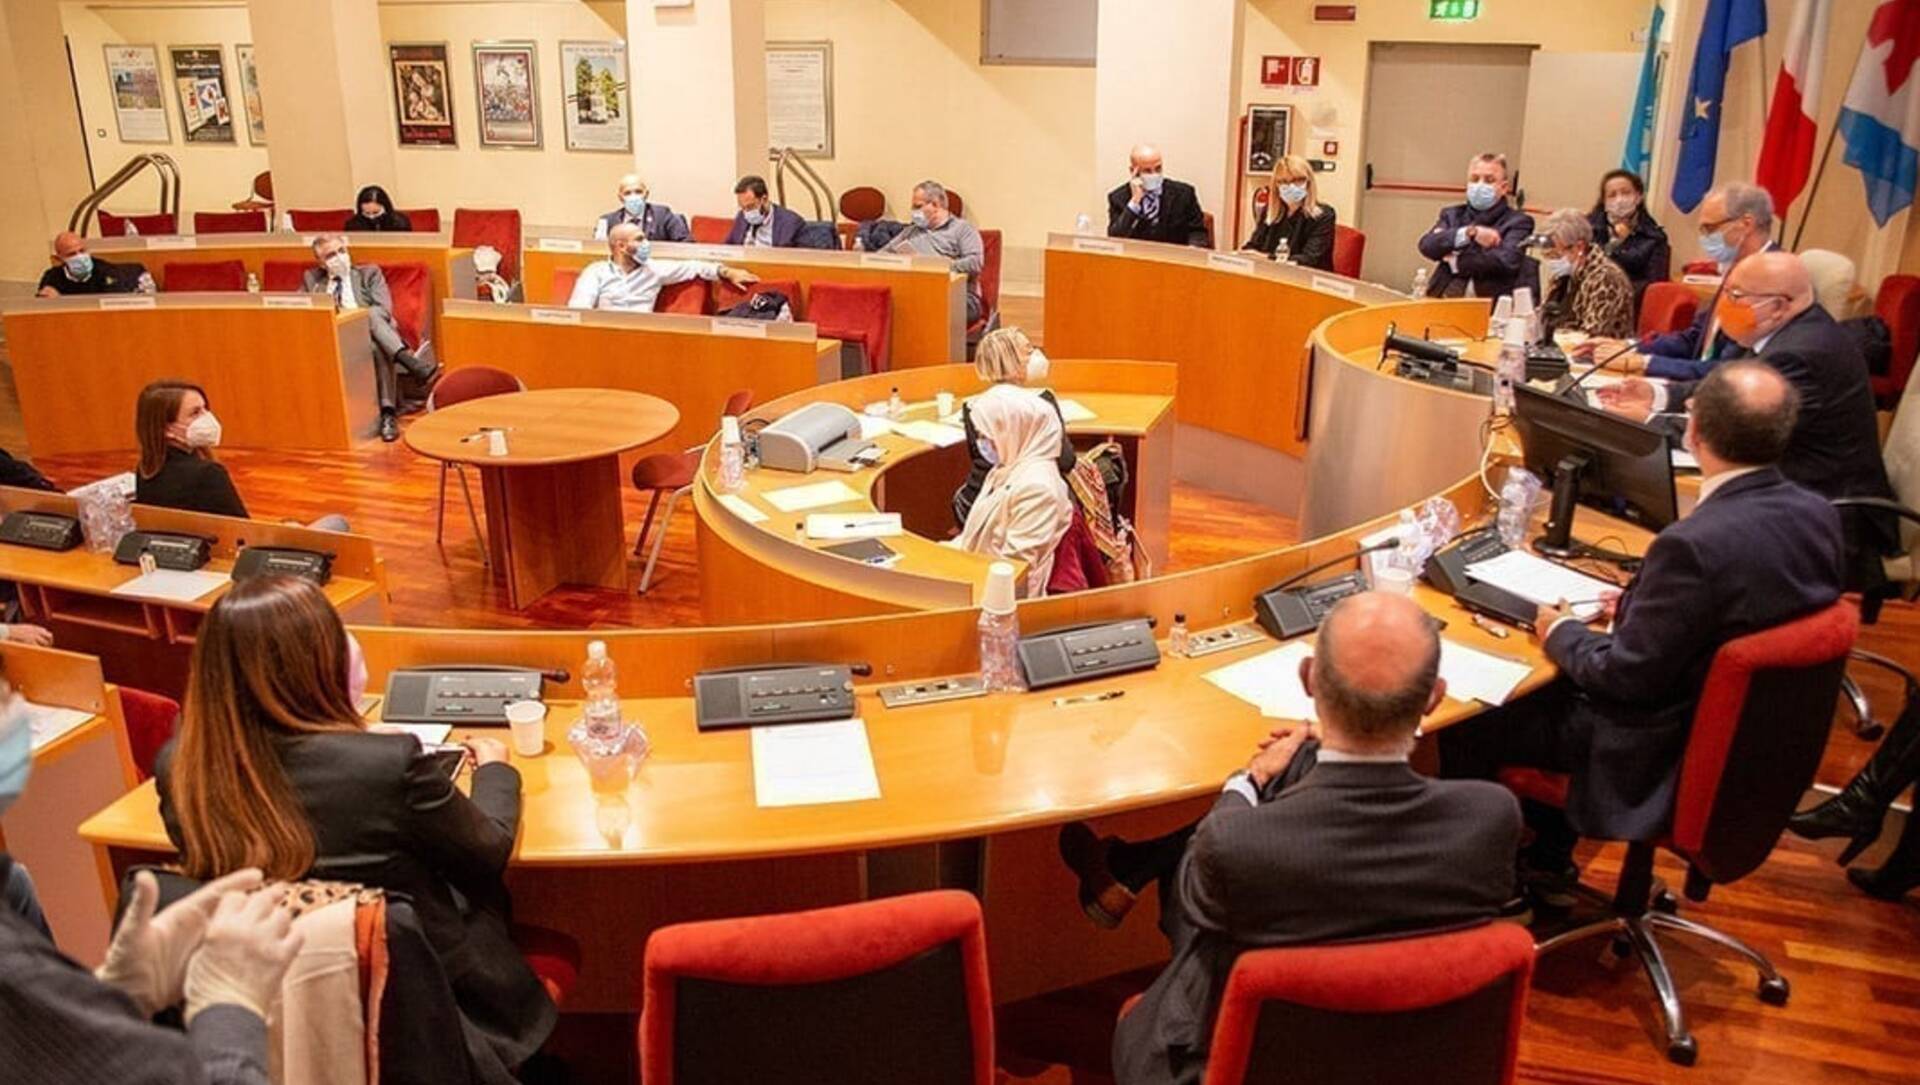 Obiettivo Saronno: “Perchè il consiglio comunale non approva più i verbali delle sedute precedenti?”